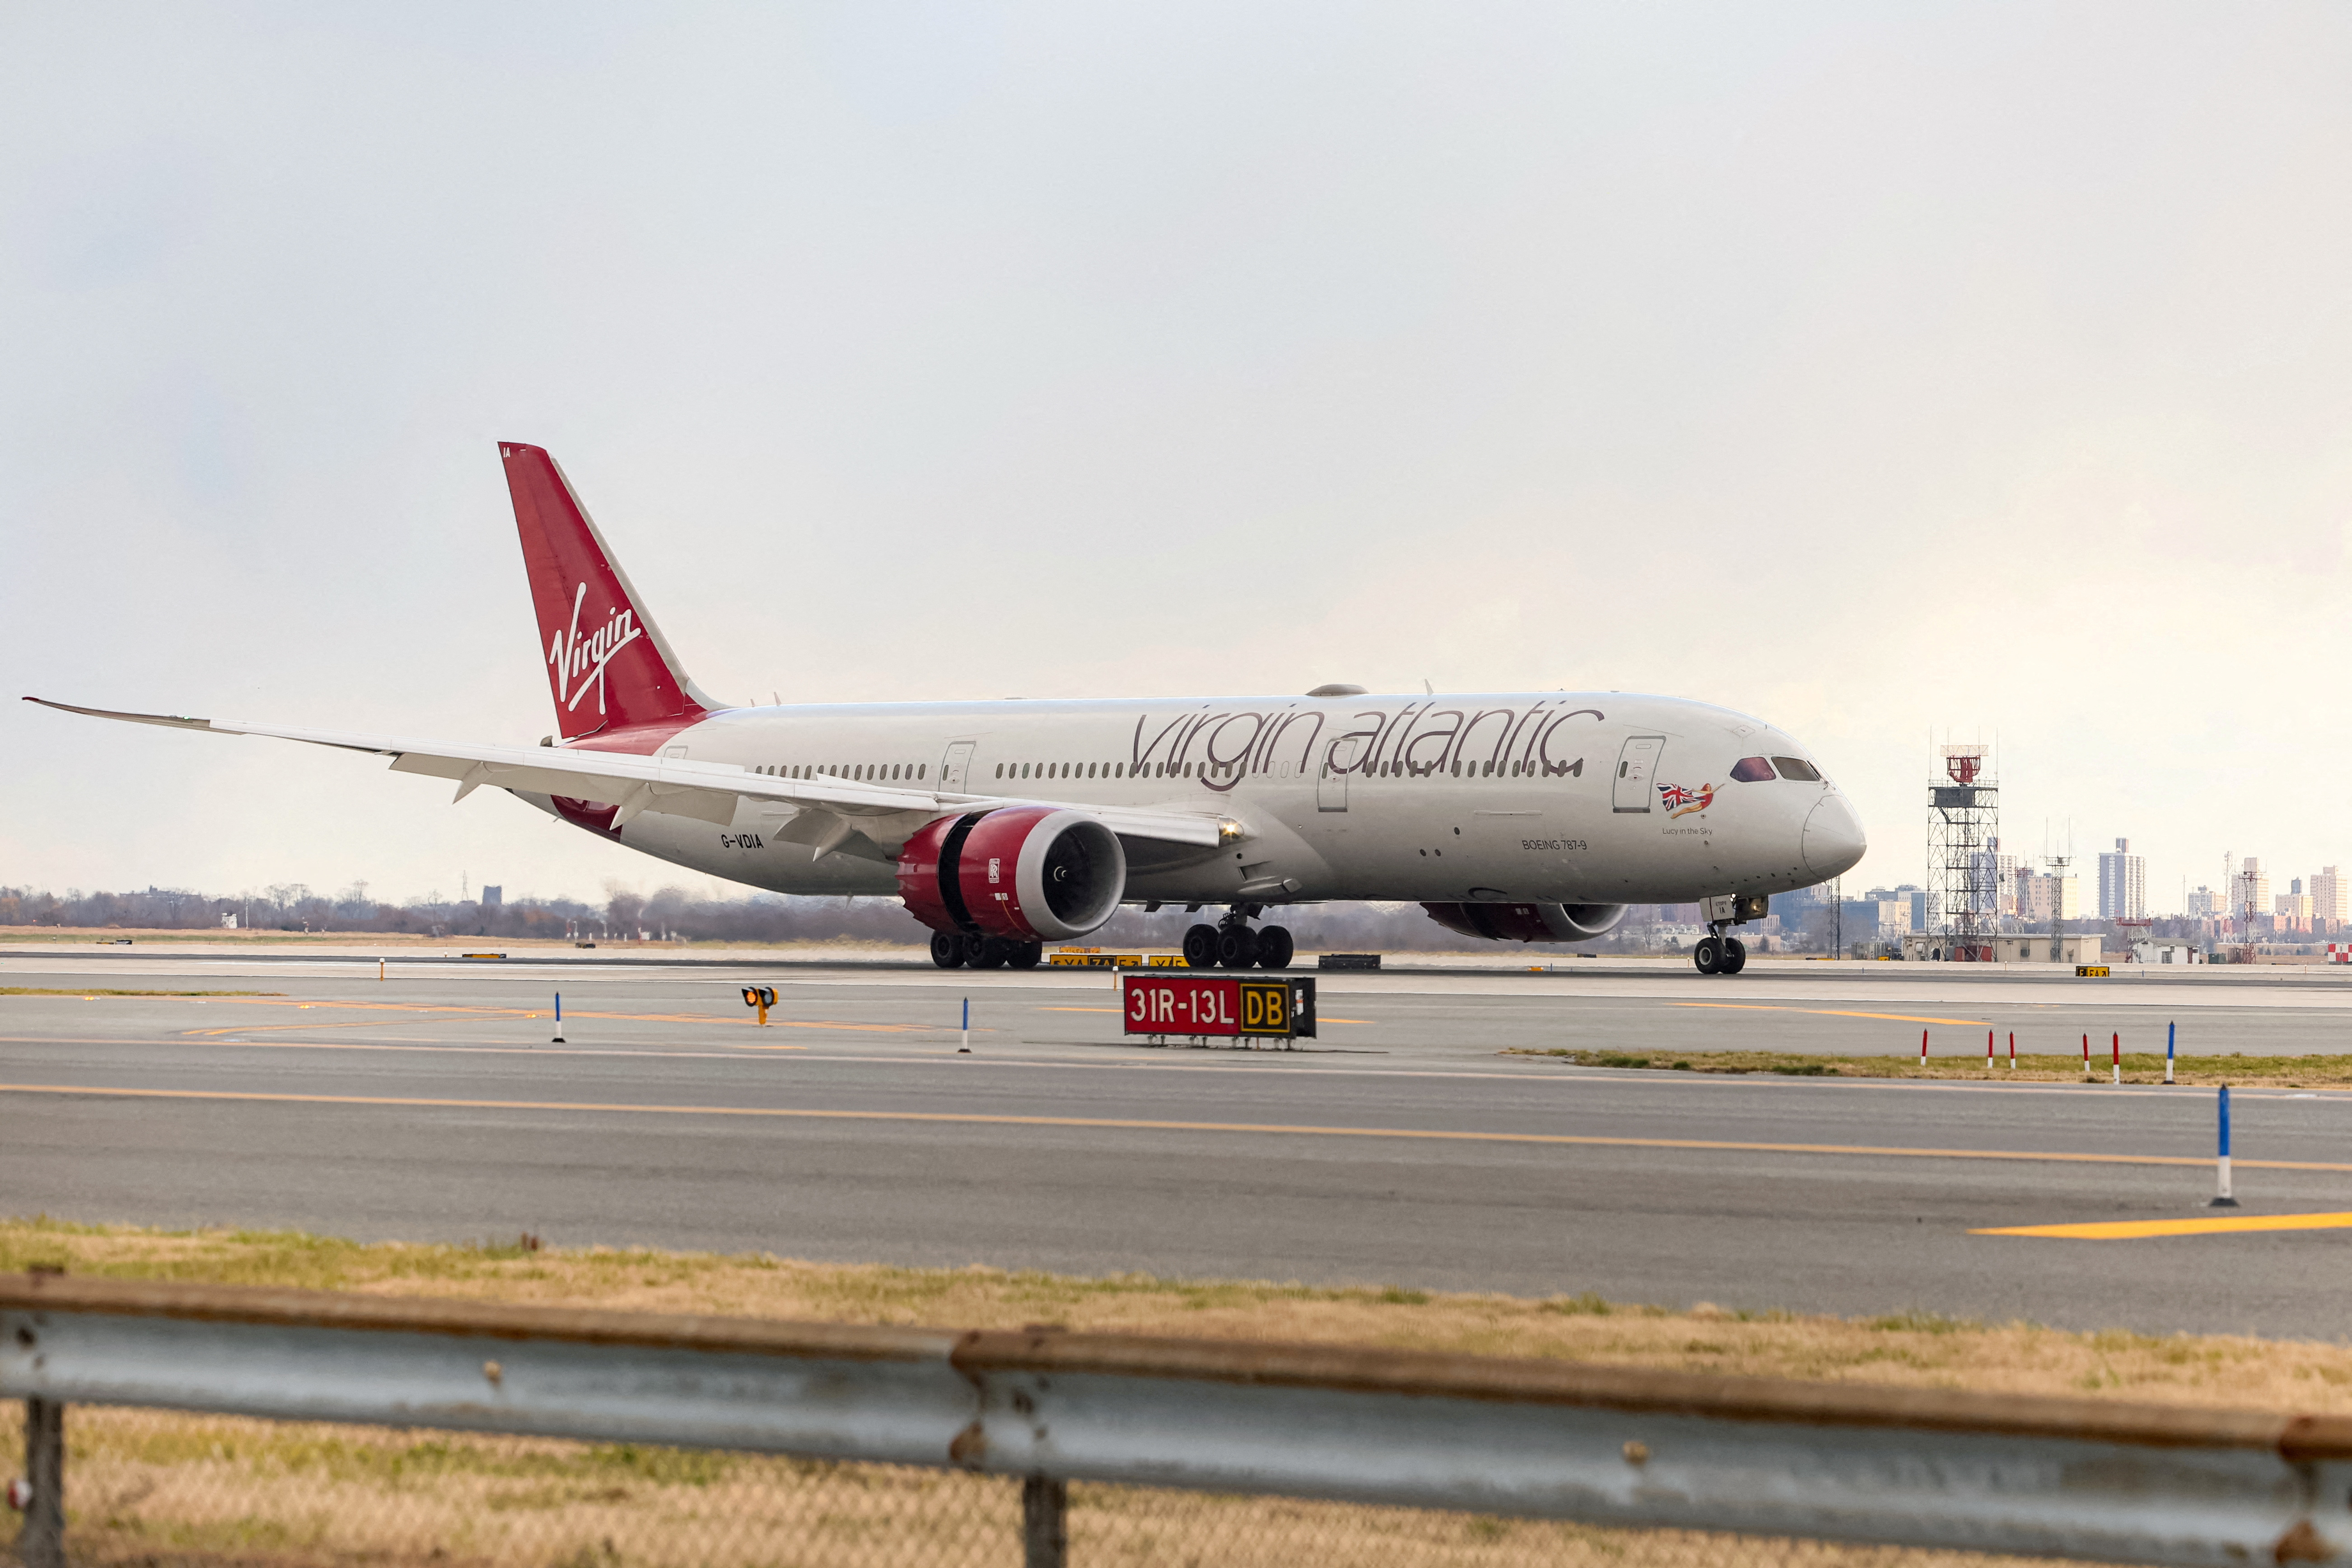 Virgin Atlantic first transatlantic flight on 100% sustainable aviation fuel arrives in New York